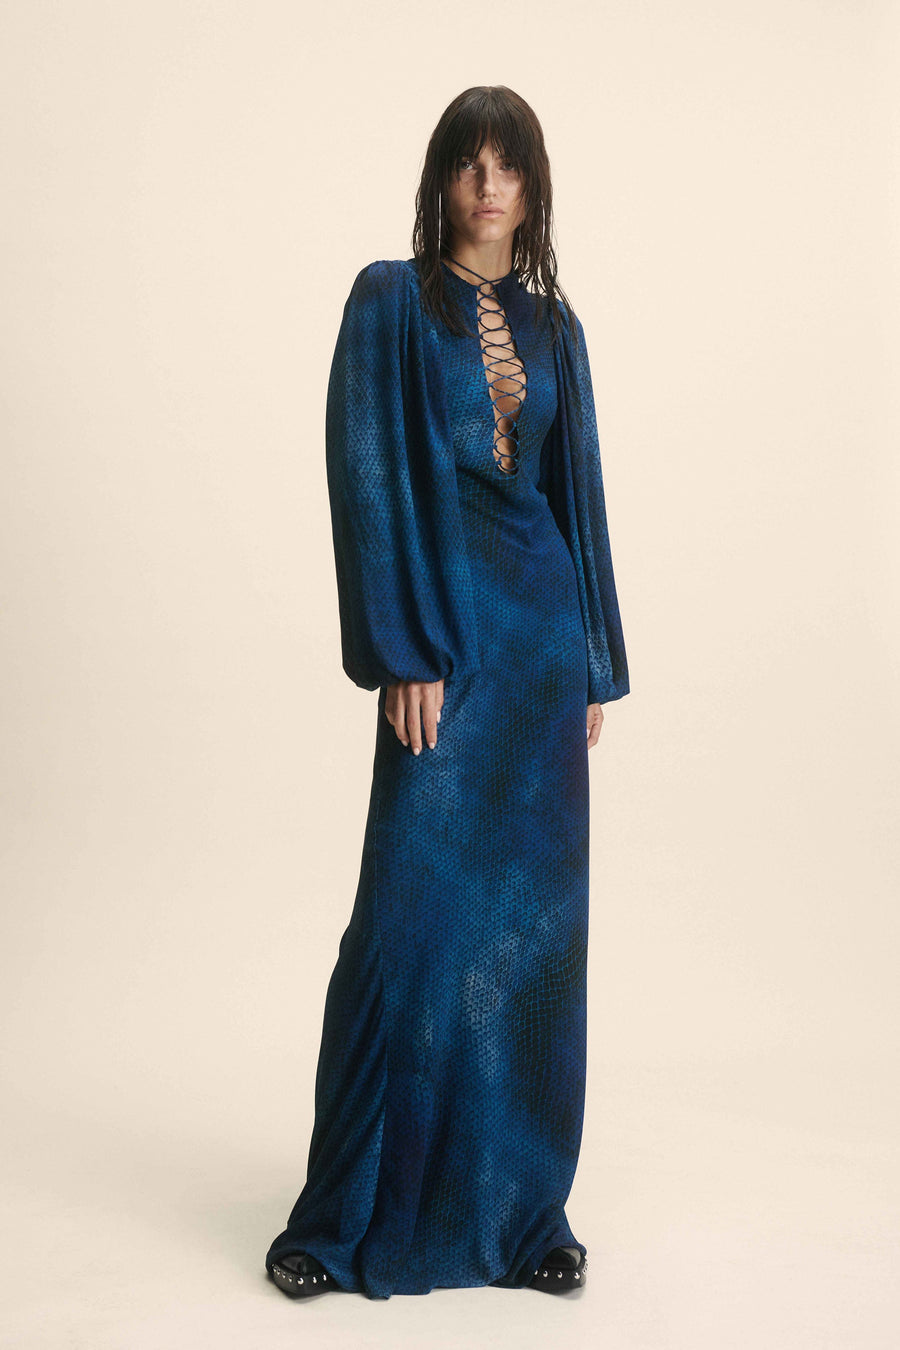 INDOCHINE MAXI DRESS IN BASILISK BLUE CHIFFON